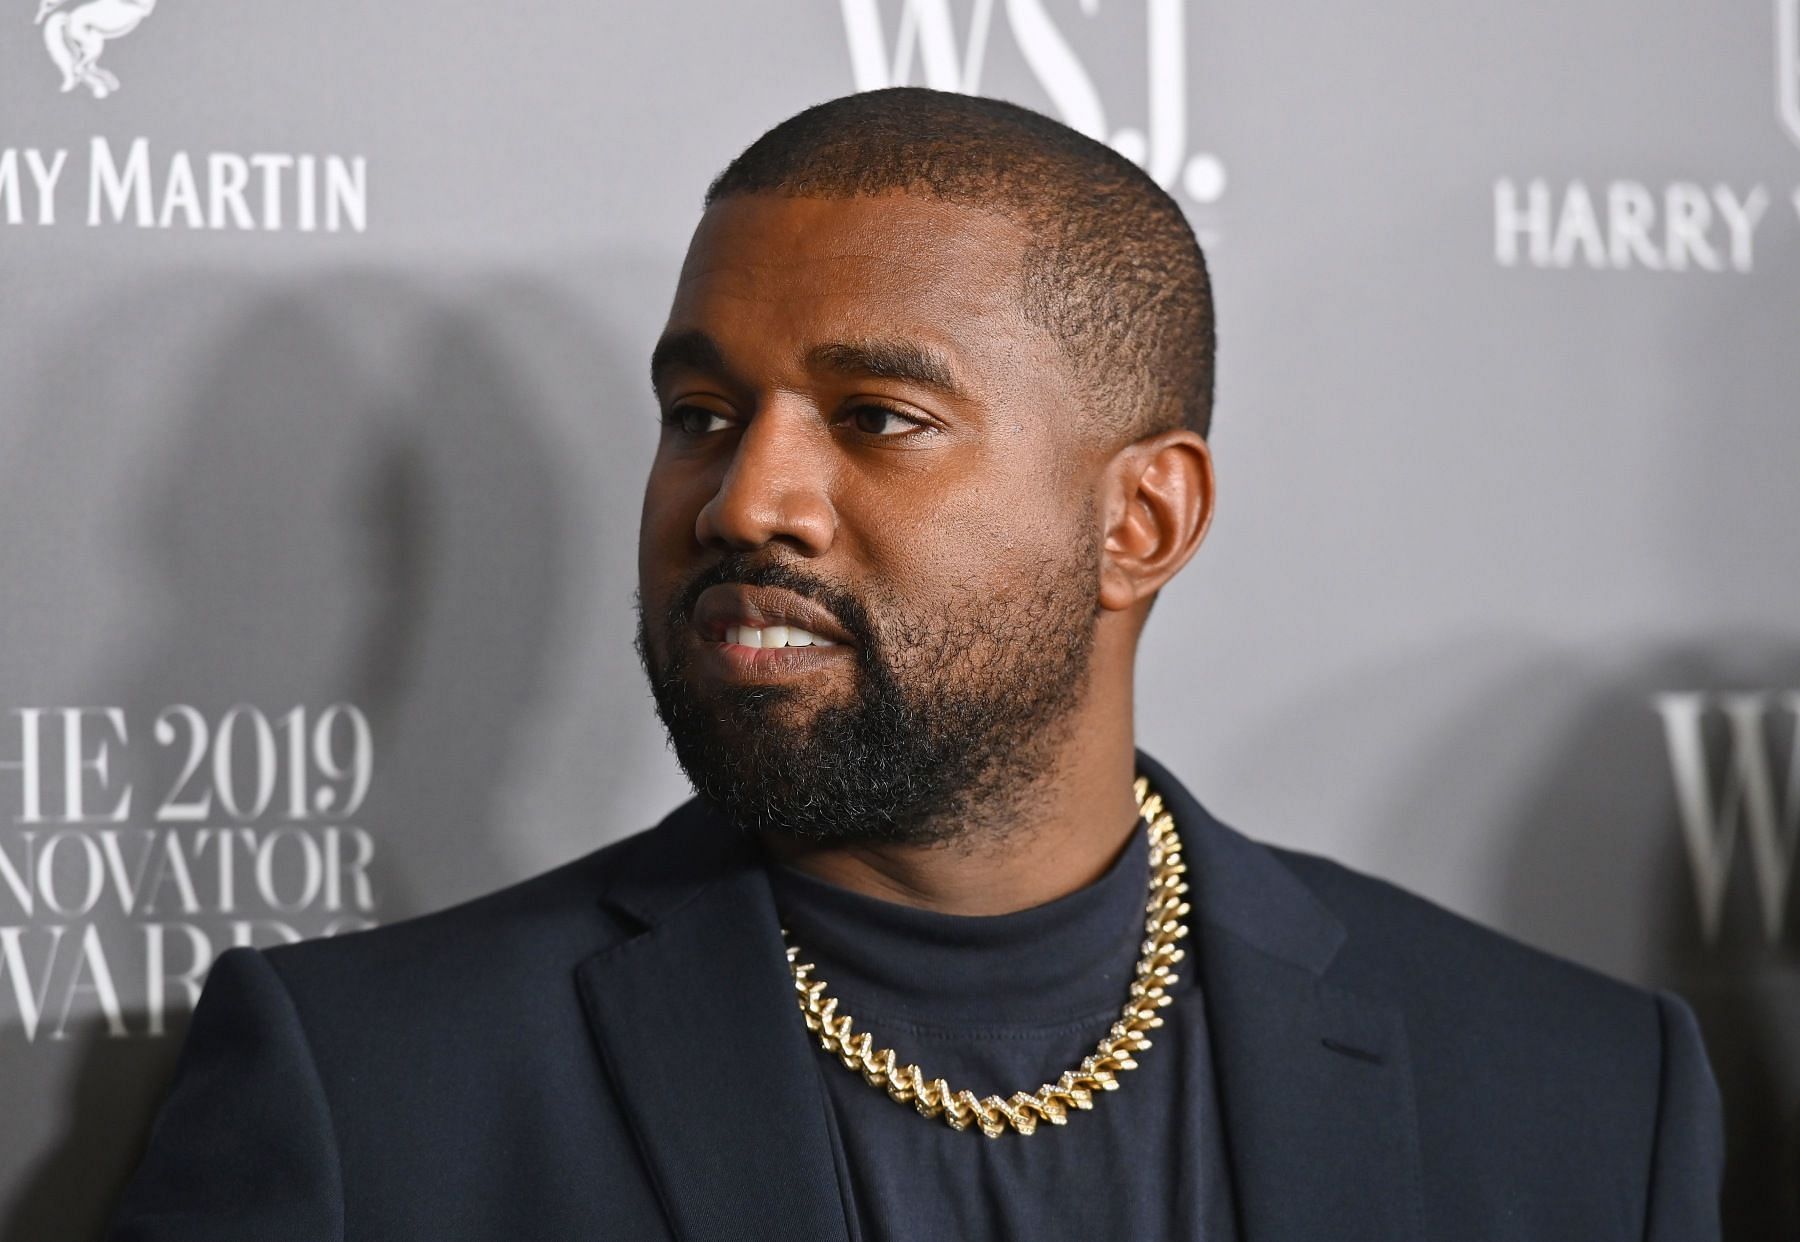 Kanye West at WSJ Mag 2019 Innovator Awards (Image via Getty Images)